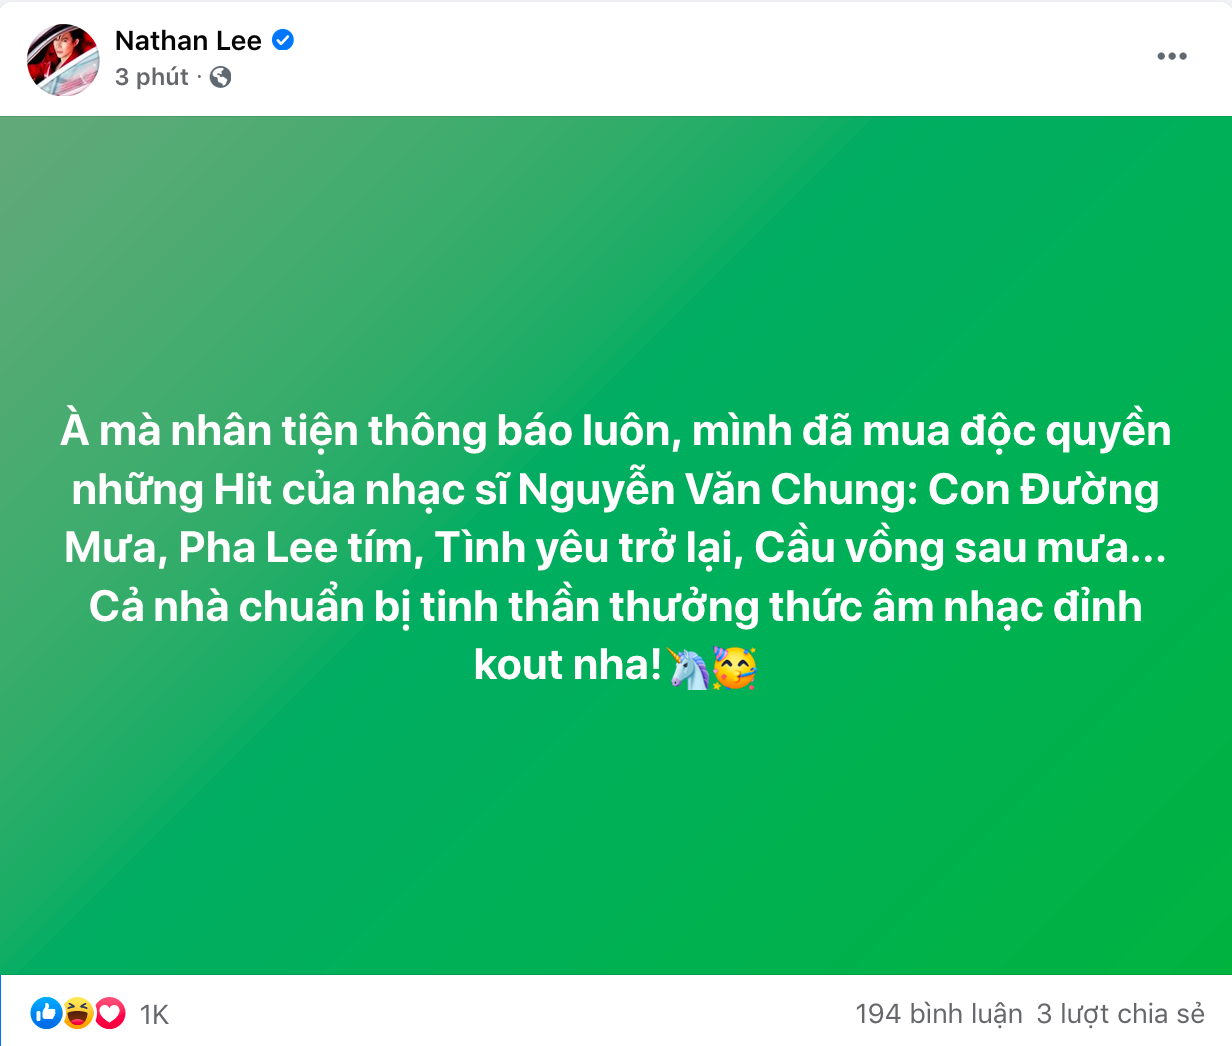 Nathan Lee chính thức tuyên bố đã mua độc quyền nhiều bài hát từng được Cao Thái Sơn thể hiện